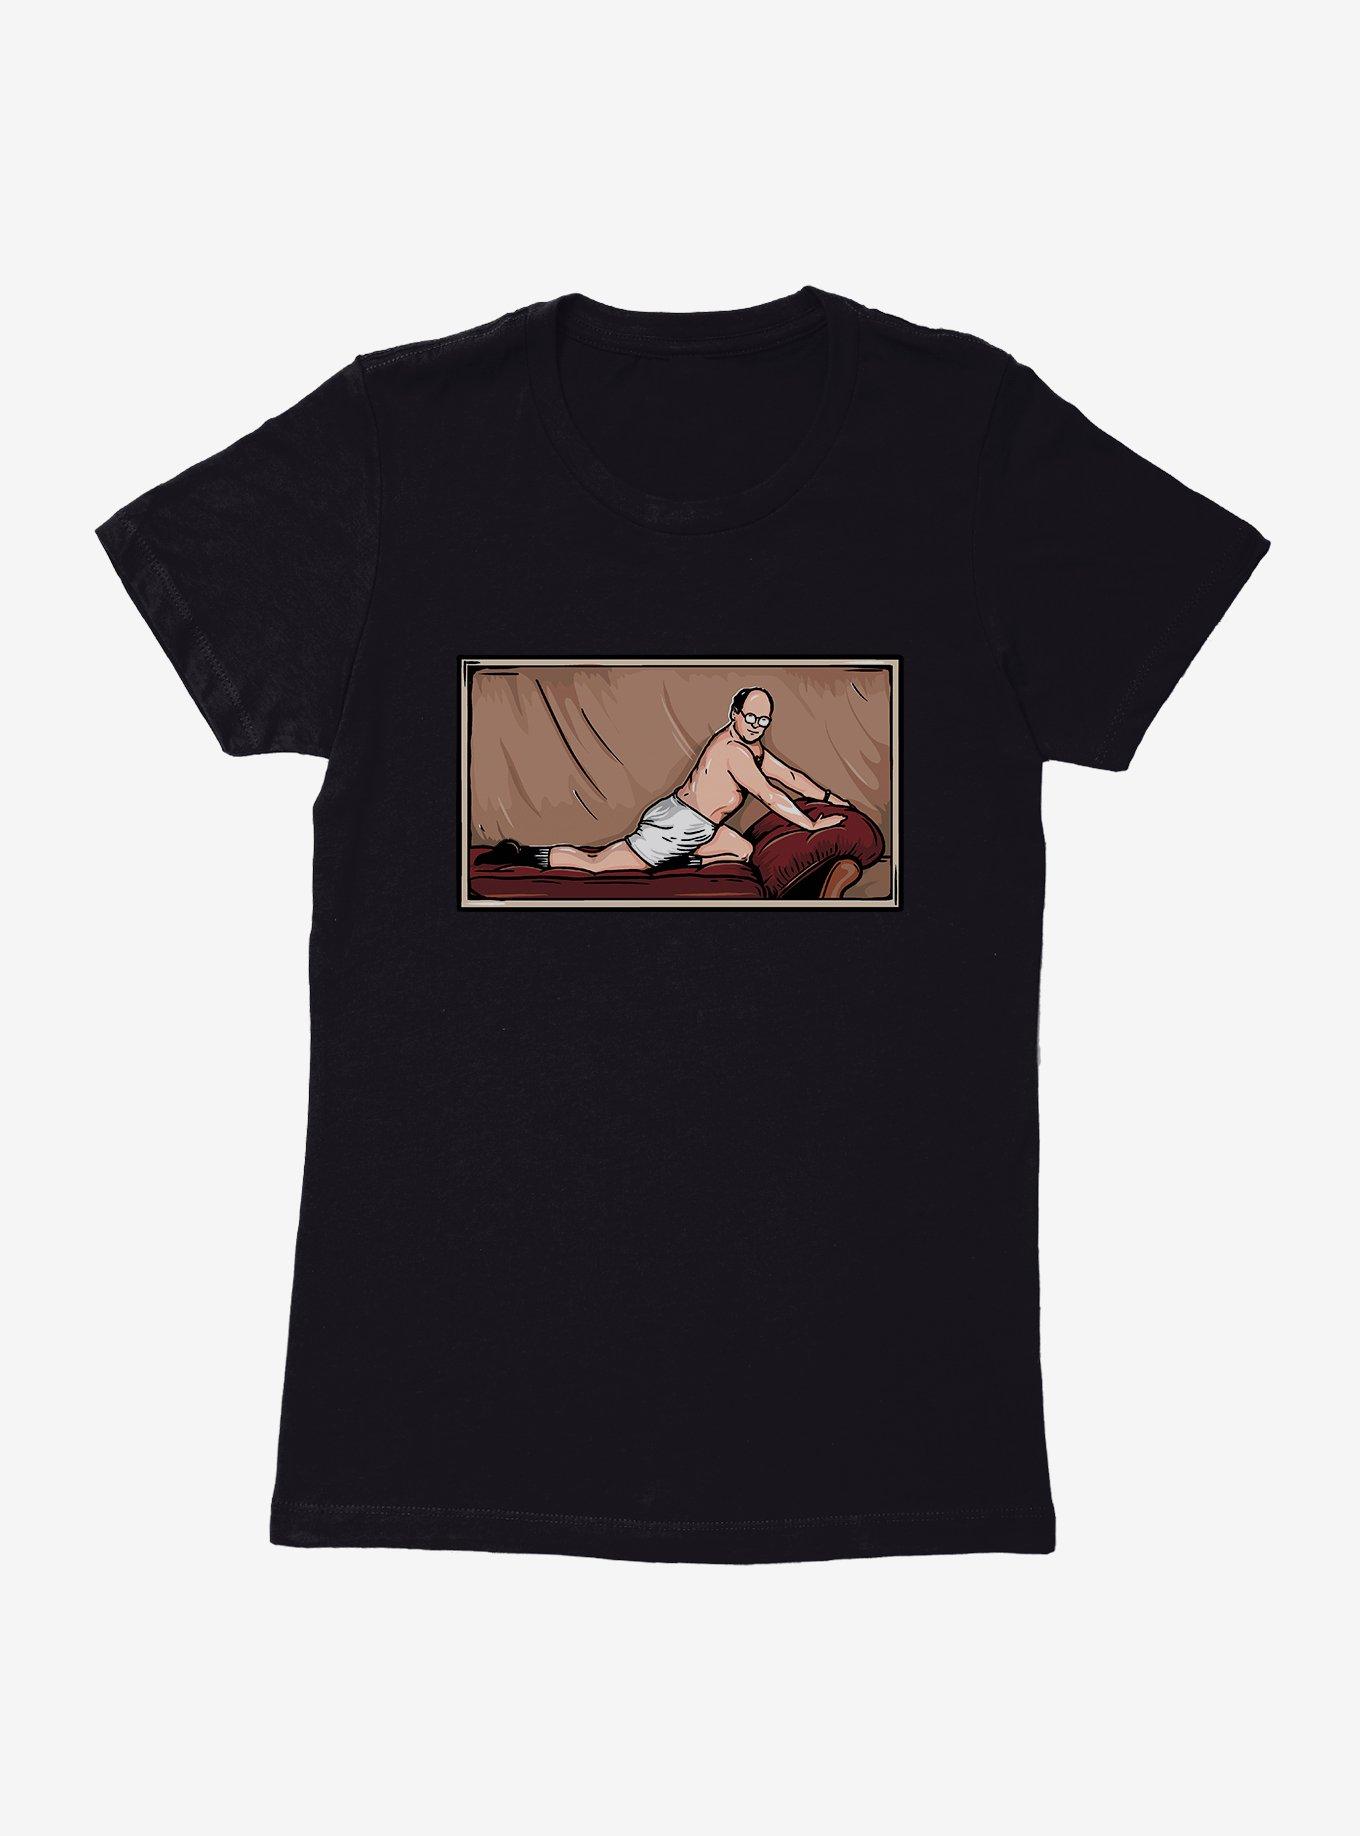 Seinfeld Timeless Art Of Seduction Womens T-Shirt | BoxLunch